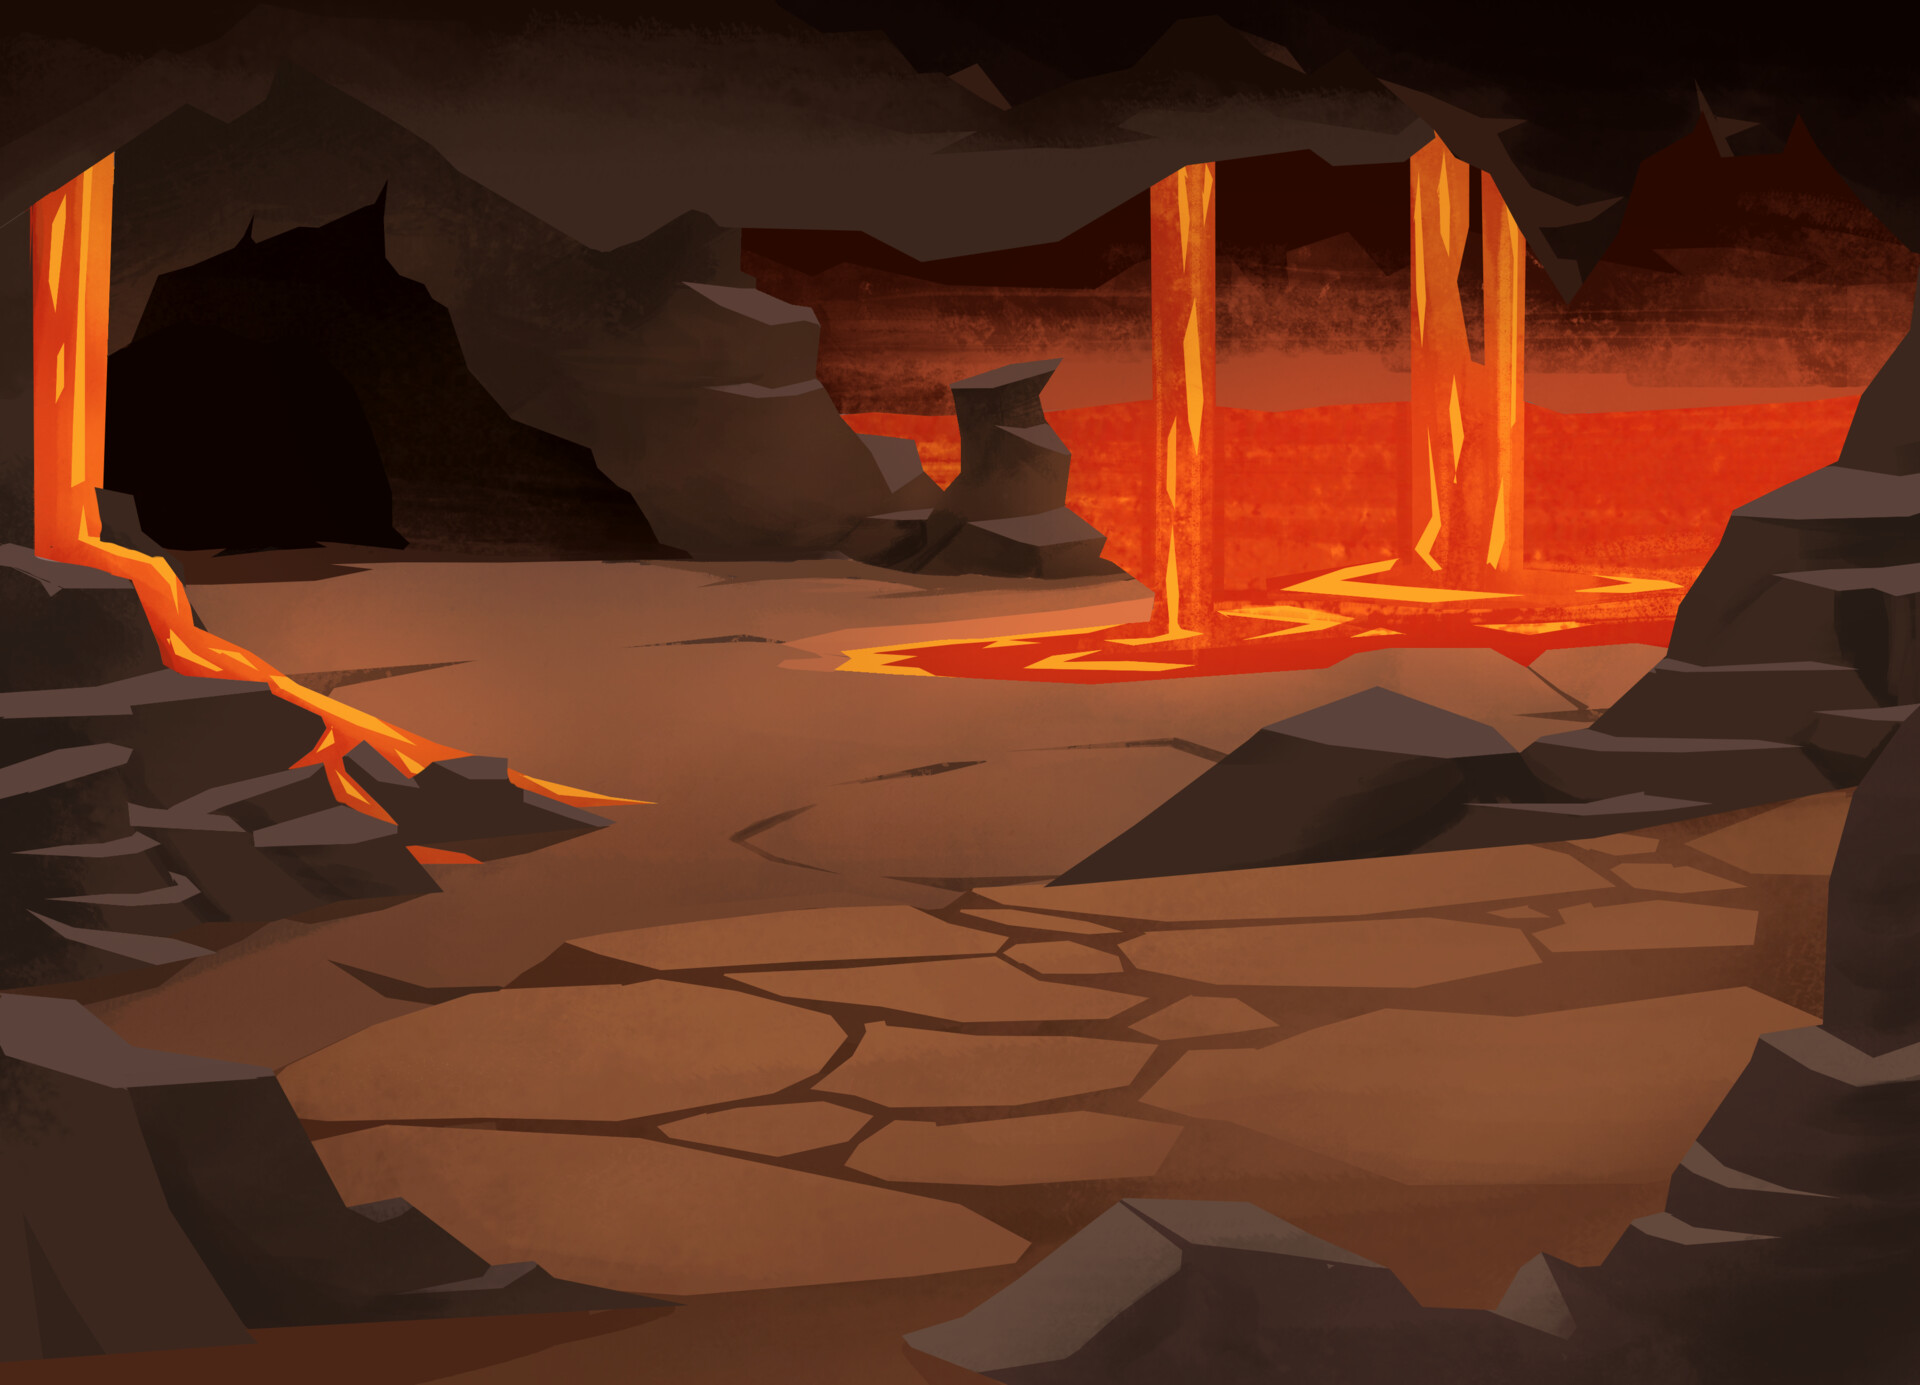 Bạn đã sẵn sàng cho màn chơi đầy thử thách chứa núi lửa trong video game chưa? Hãy sử dụng toàn bộ khả năng của mình để đối mặt với những thử thách và phá vỡ màn chơi này.